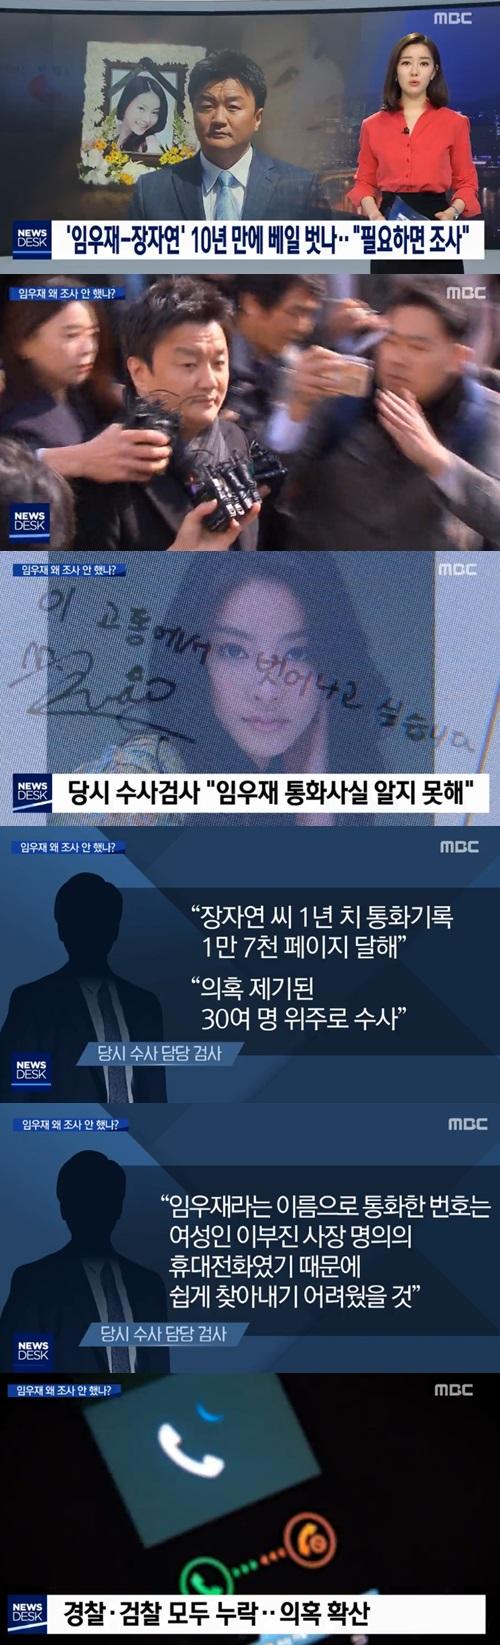 임우재 전 삼성 고문 '장자연 스캔들' 연관성 제기 (사진: MBC 뉴스)